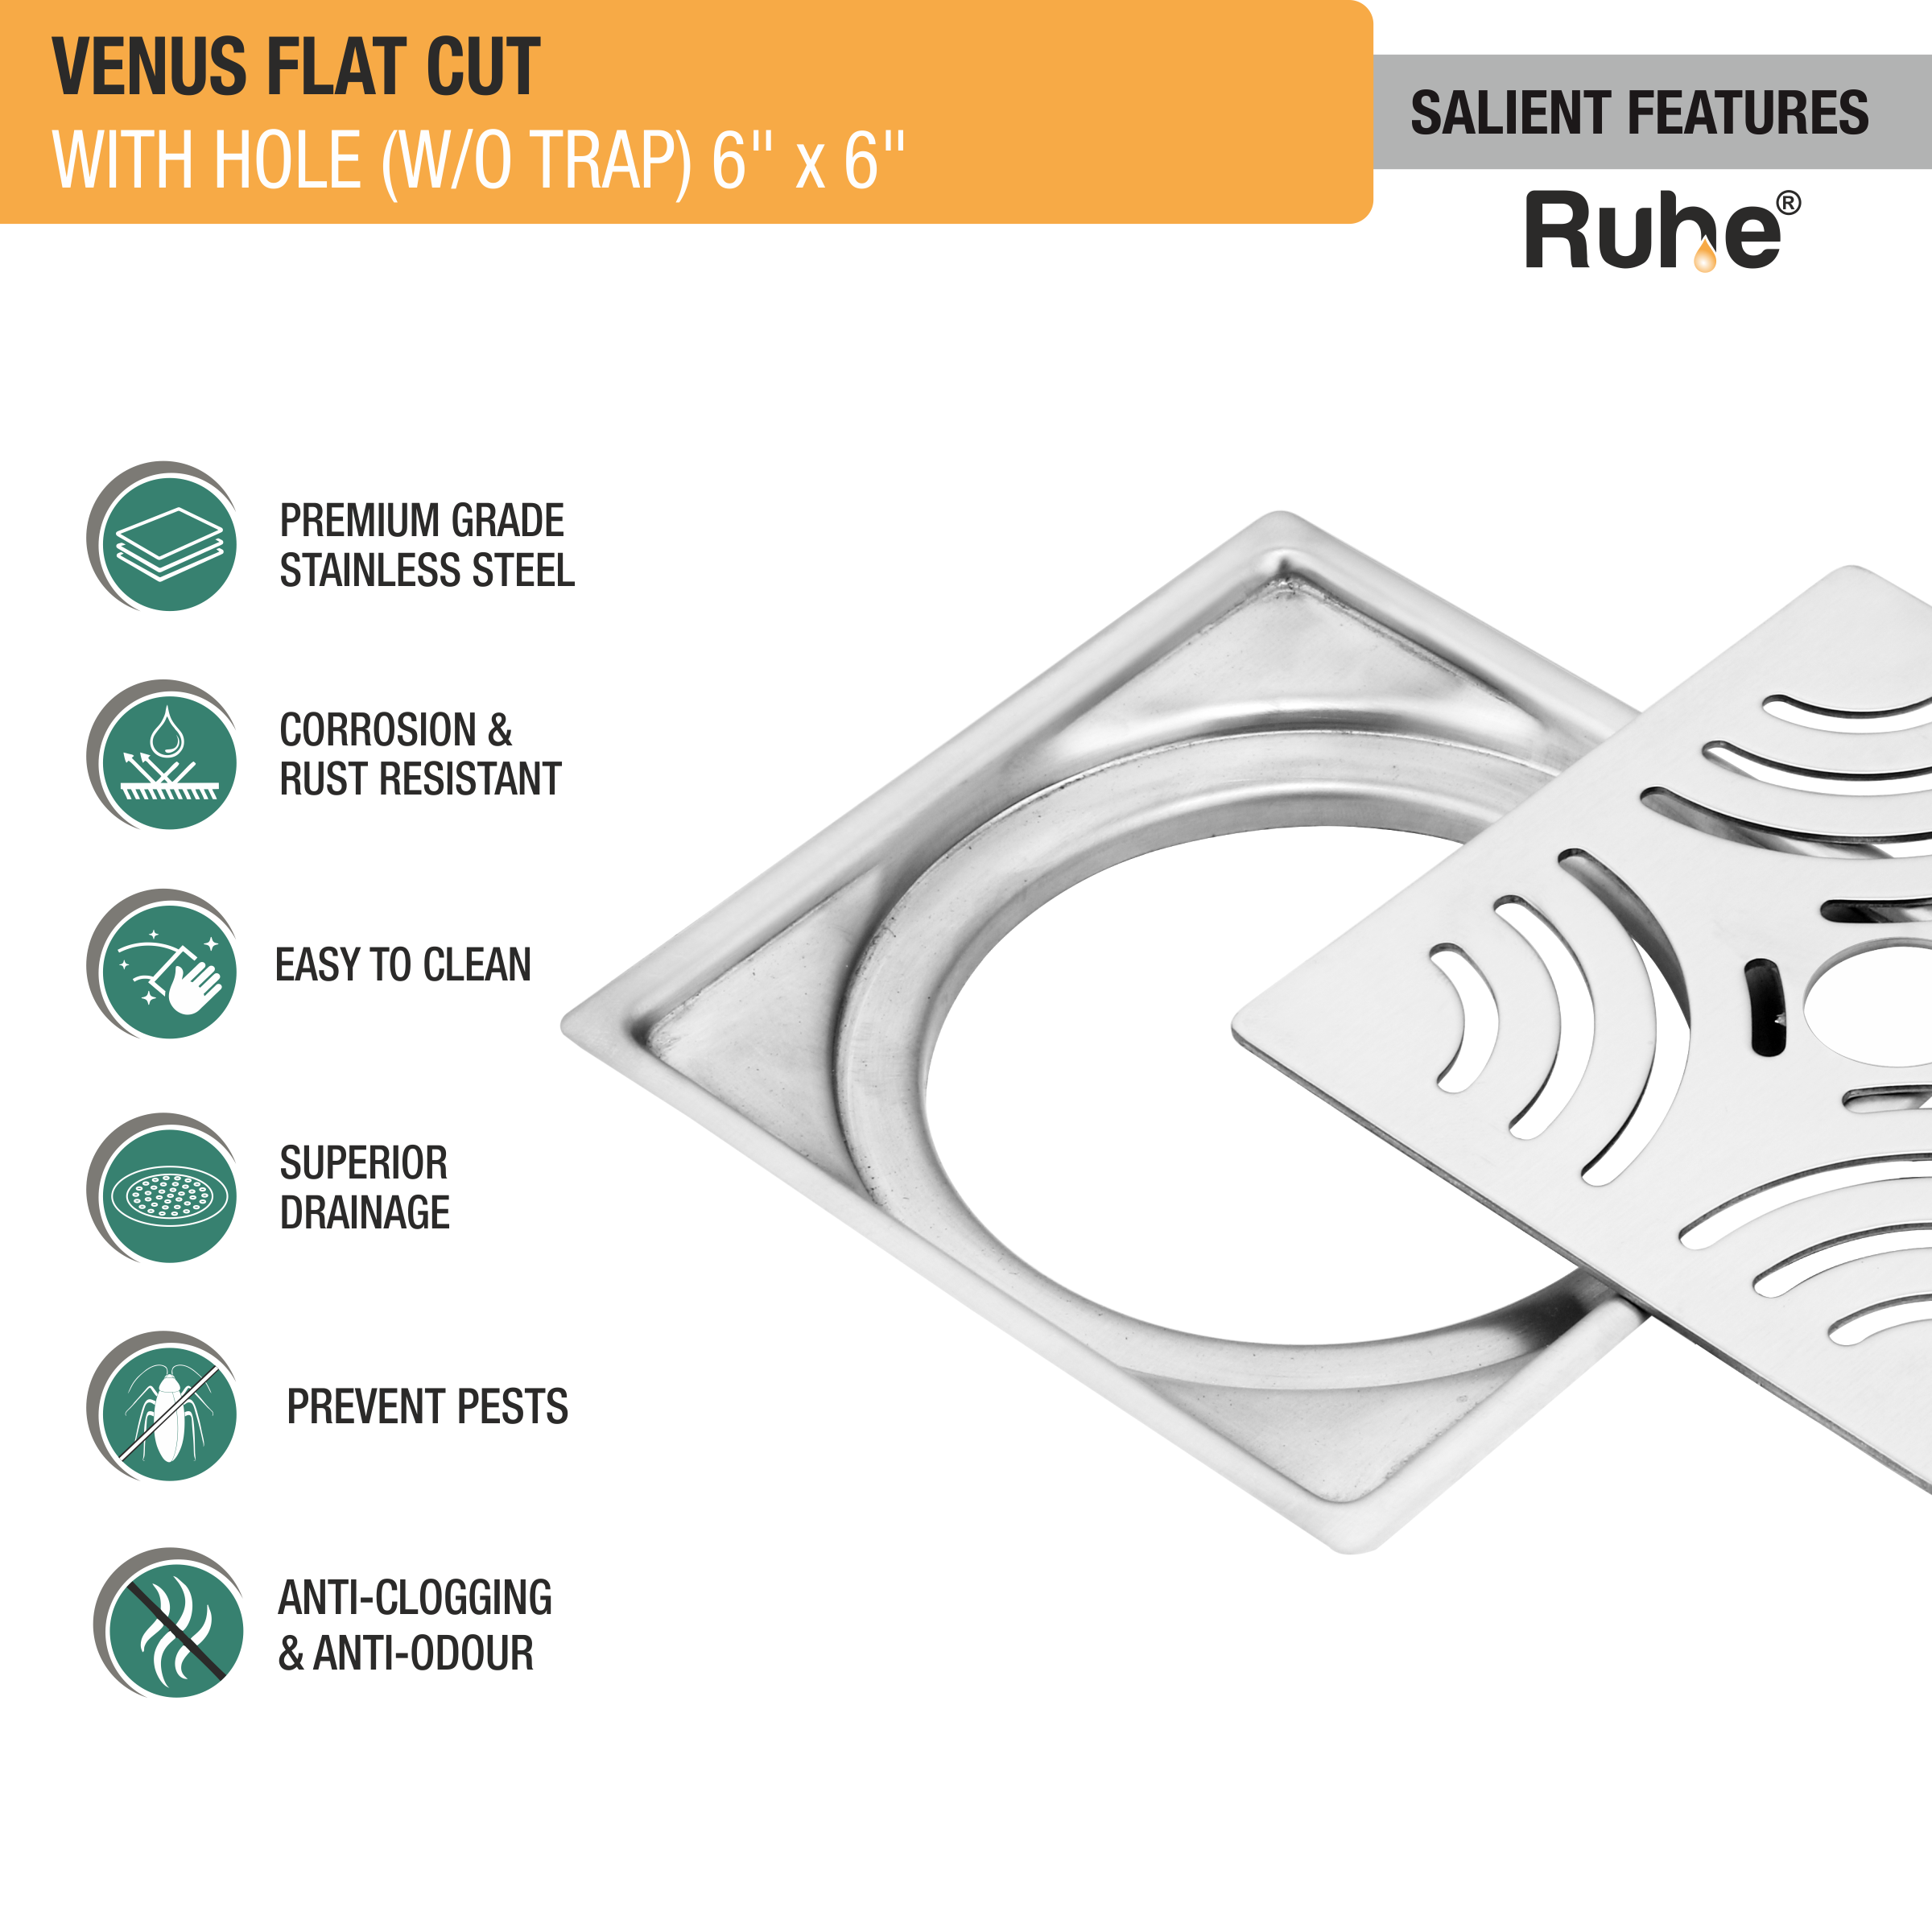 Venus Square Premium Flat Cut Floor Drain (6 x 6 Inches) with Hole features